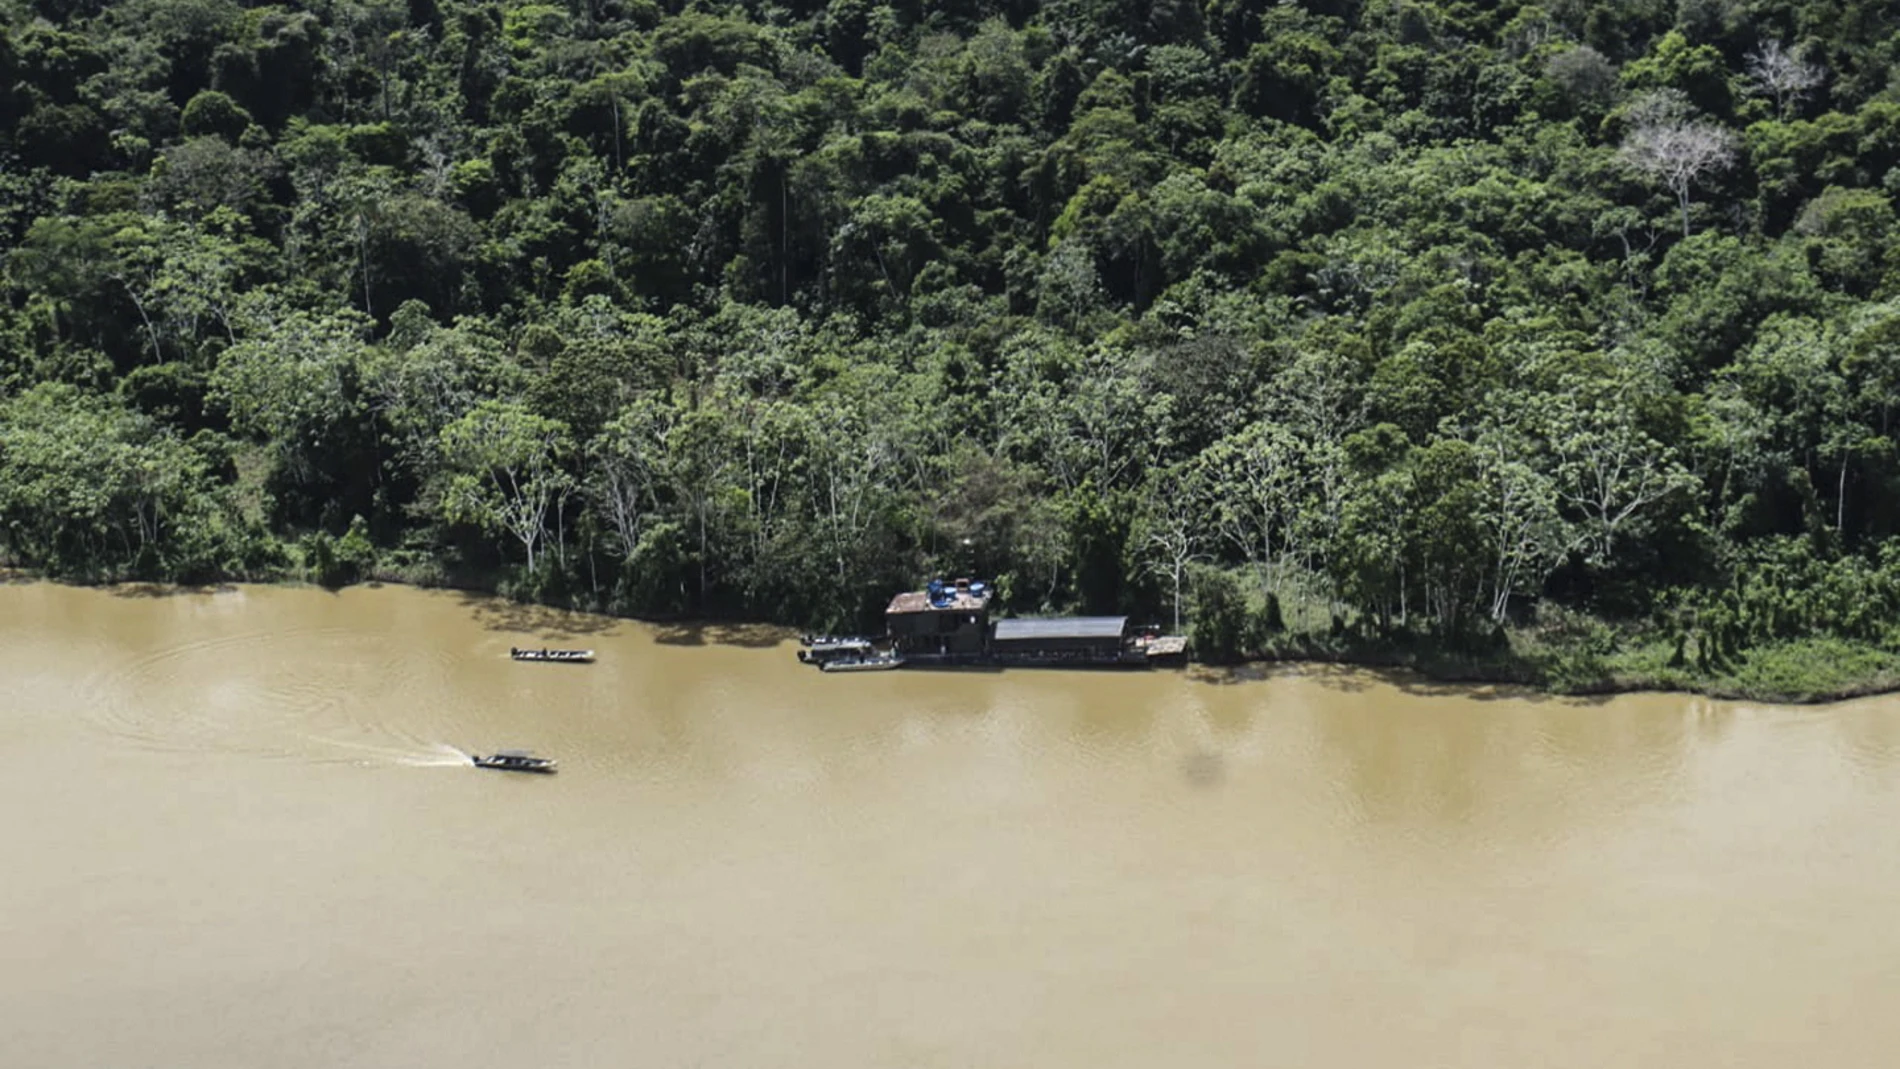 Una foto proporcionada por el ejército brasileño muestra un área selvática en el valle de Javari, estado de Amazonas